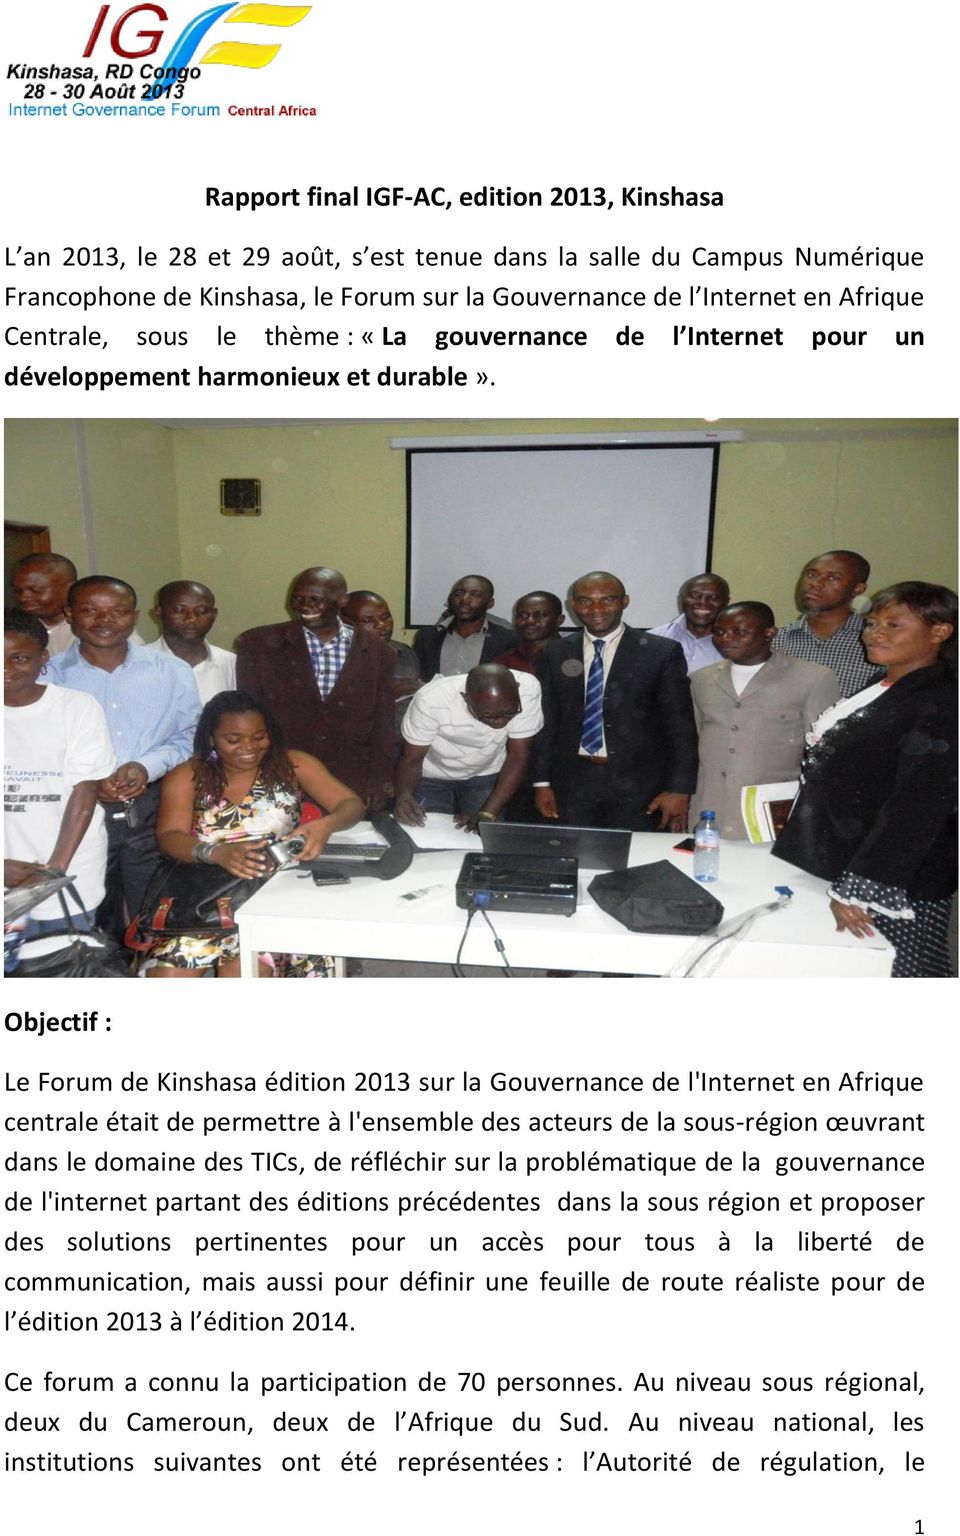 Objectif : Le Forum de Kinshasa édition 2013 sur la Gouvernance de l'internet en Afrique centrale était de permettre à l'ensemble des acteurs de la sous-région œuvrant dans le domaine des TICs, de